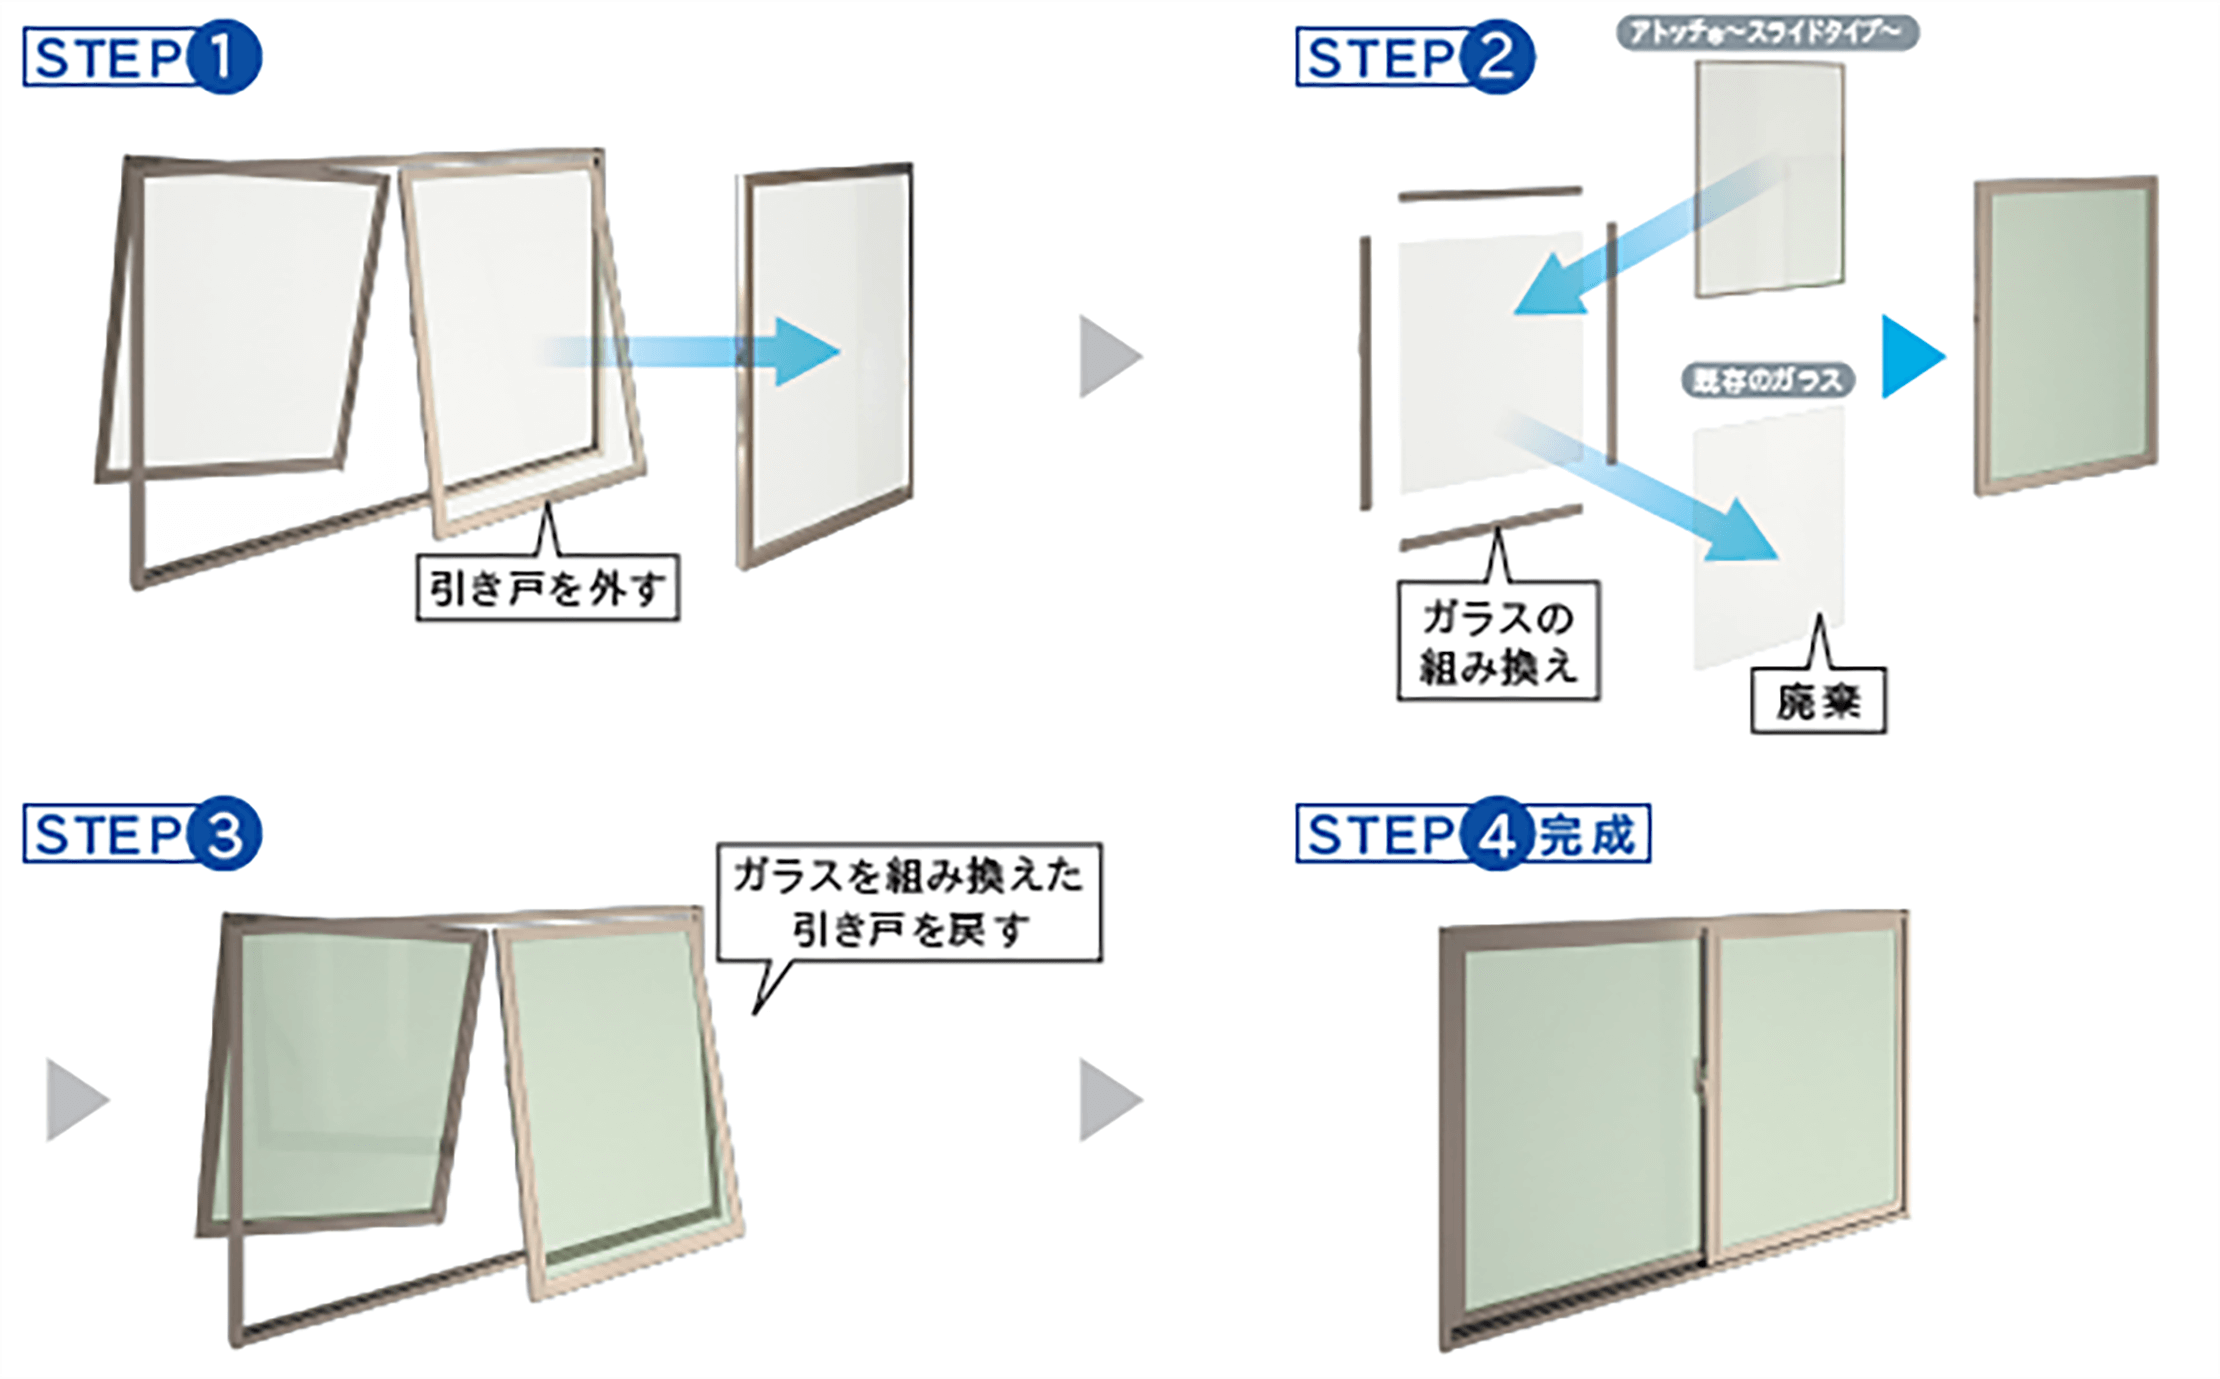 図：STEP1 引き戸を外す,STEP2 ガラスの組み換え,STEP3 ガラスを組み換えた引き戸を戻す,STEP4 完成